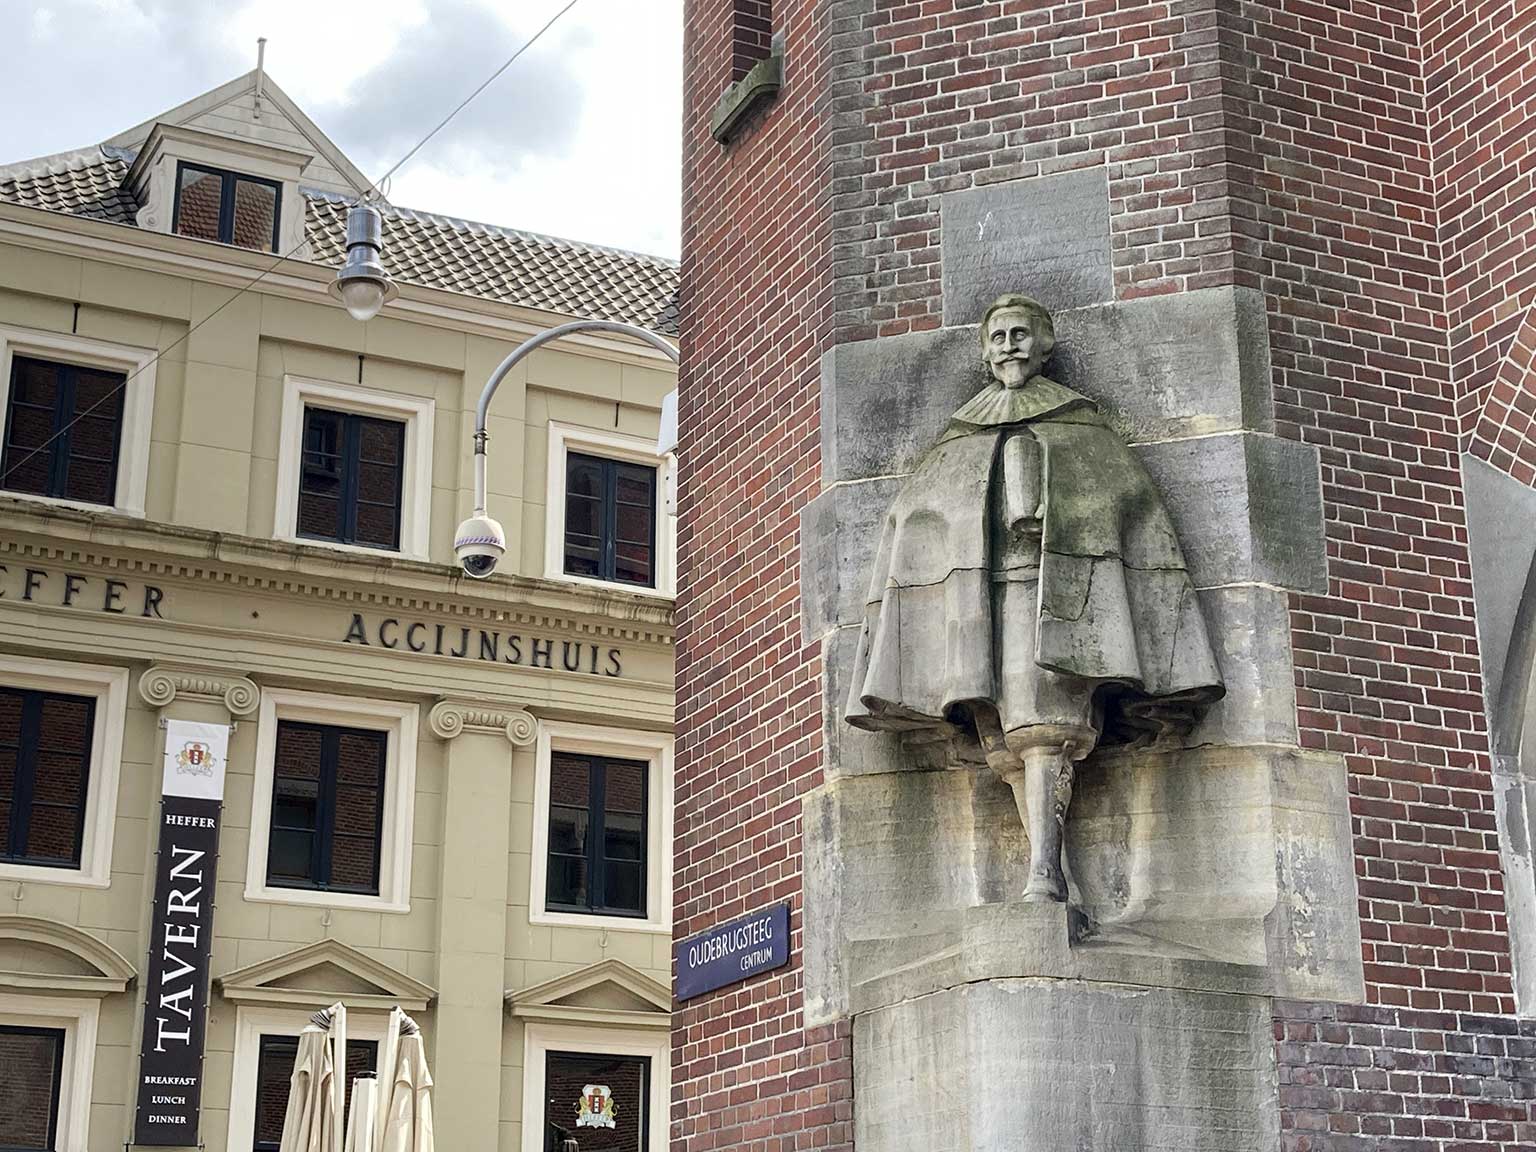 Een stukje van het Accijnshuis met een hoek van de Beurs van Berlage, Amsterdam